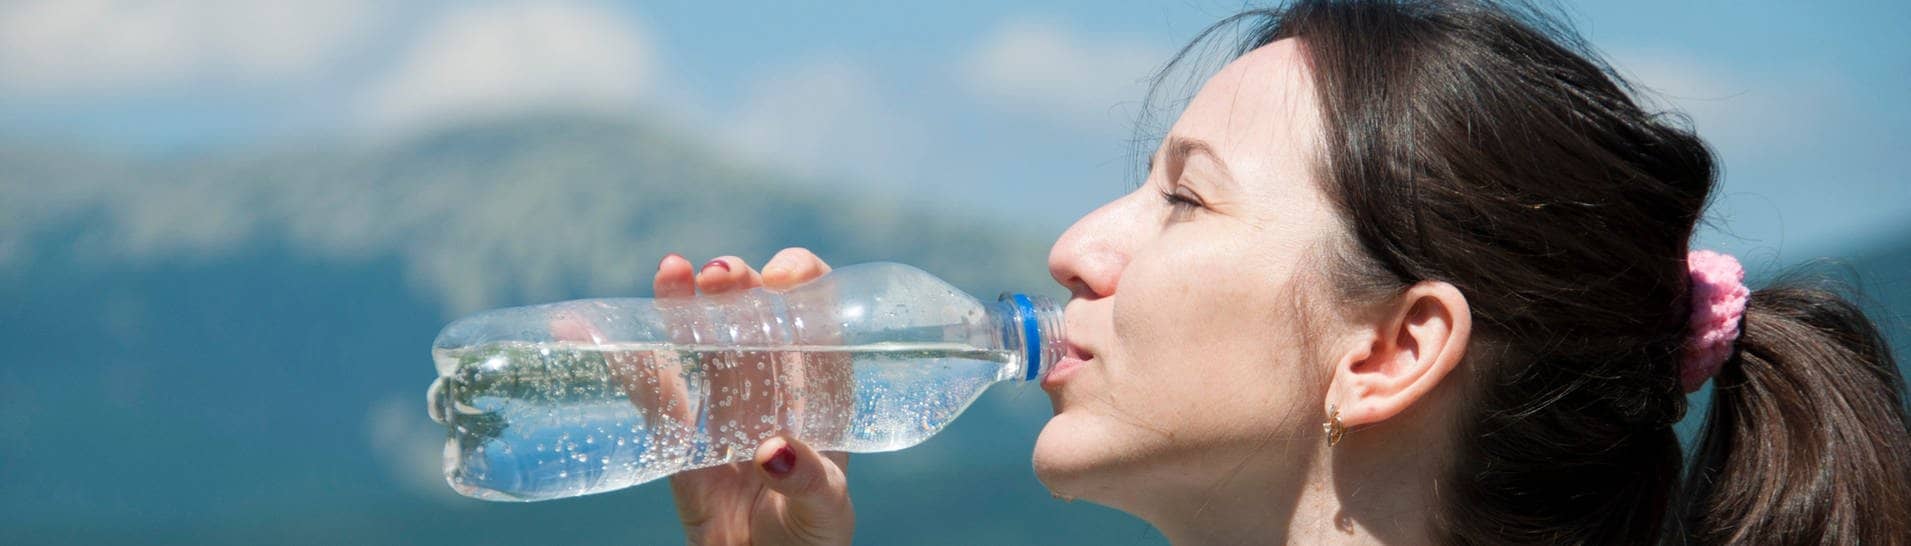 Frau trinkt Wasser vorm Hintergrund der Berge